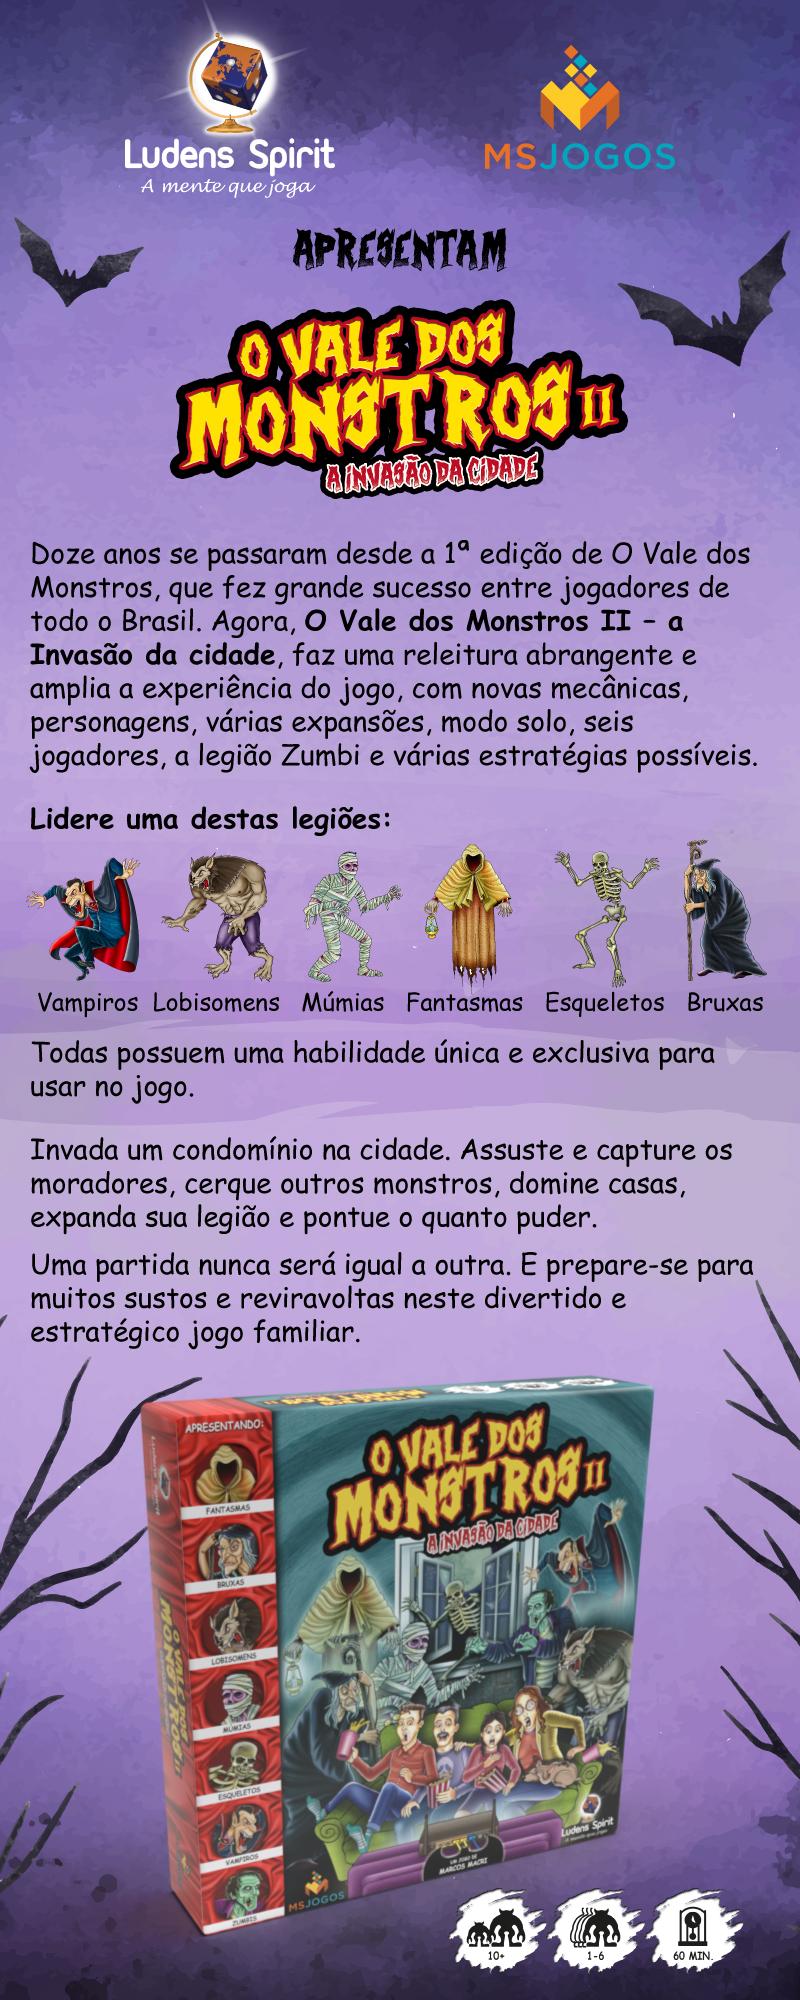 O VALE DOS MONSTROS 2 é um jogo brasileiro que tá entrando em financia